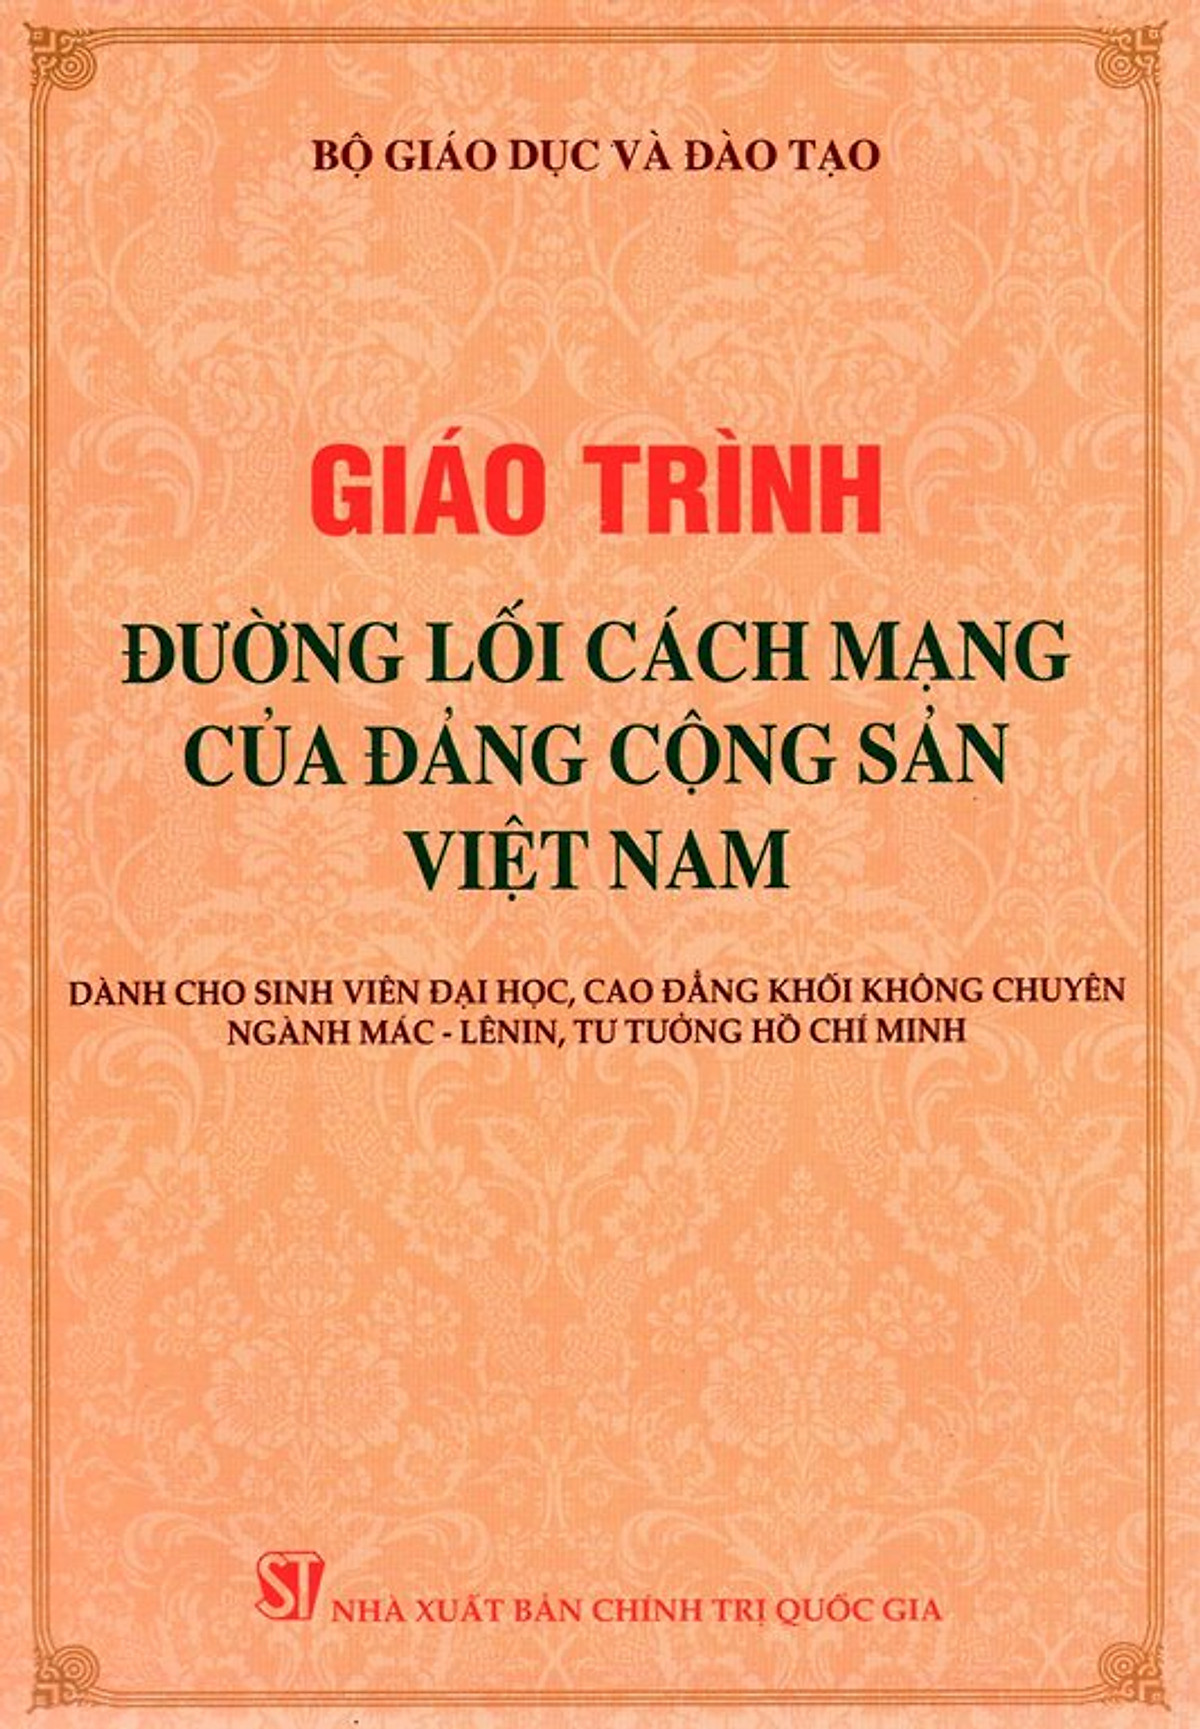 Giáo trình đường lối cách mạng Đảng cộng sản Việt Nam (dành cho sinh viên đại học, cao đẳng khối không chuyên ngành Mác-Lênin, tư tưởng Hồ Chí Minh)